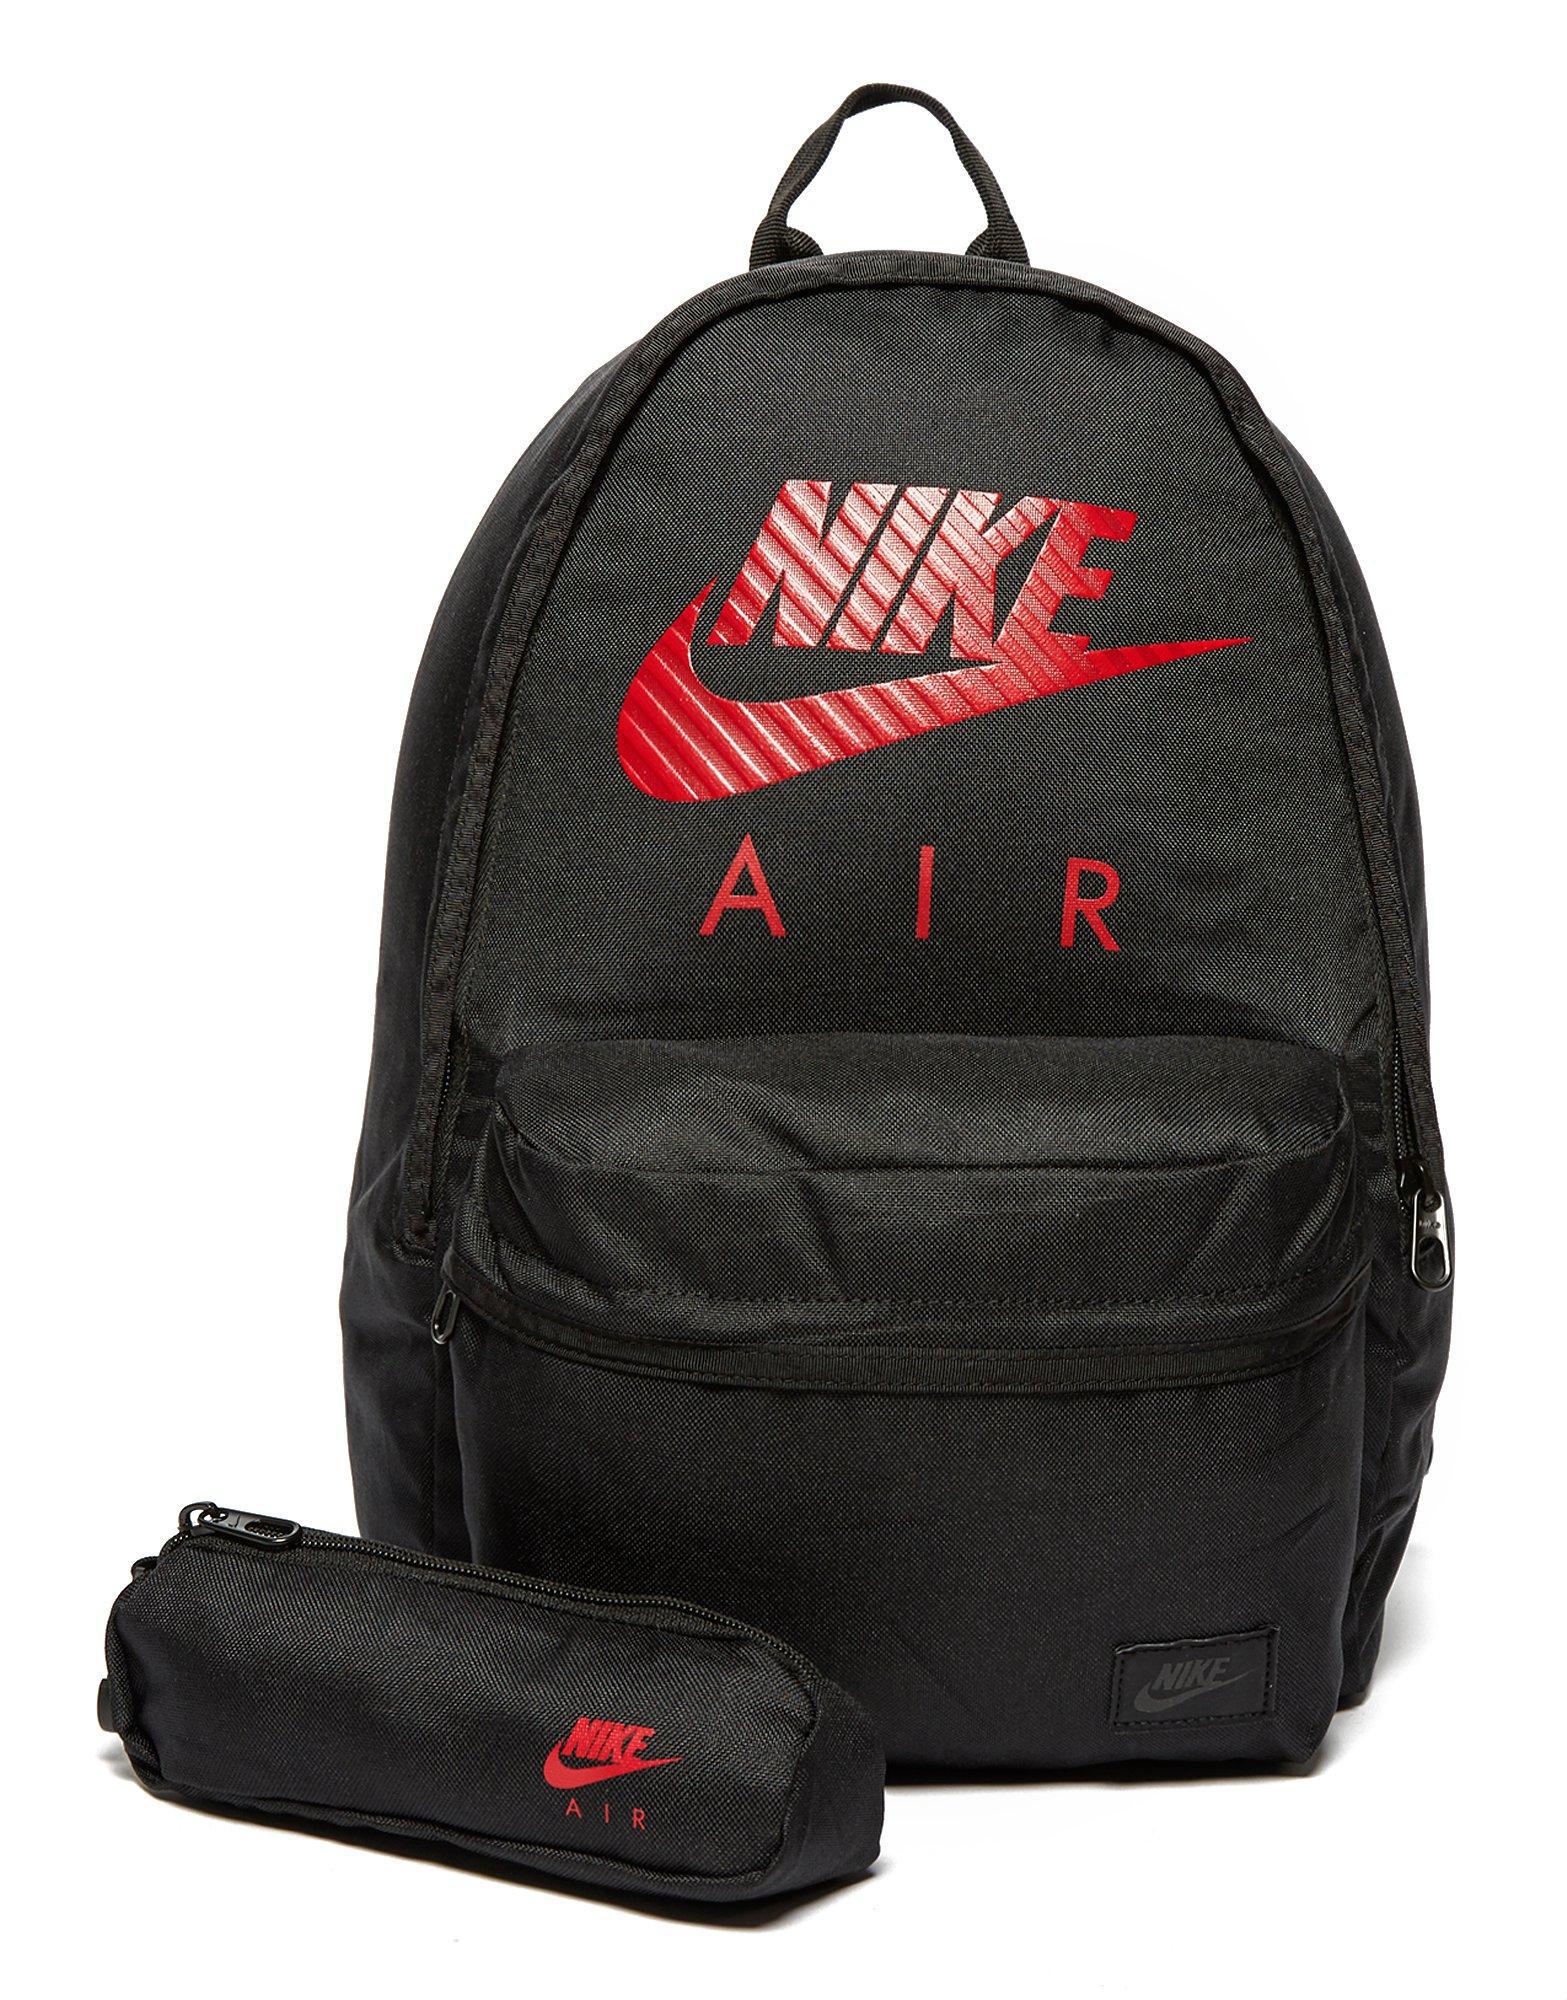 nike air bag black and red